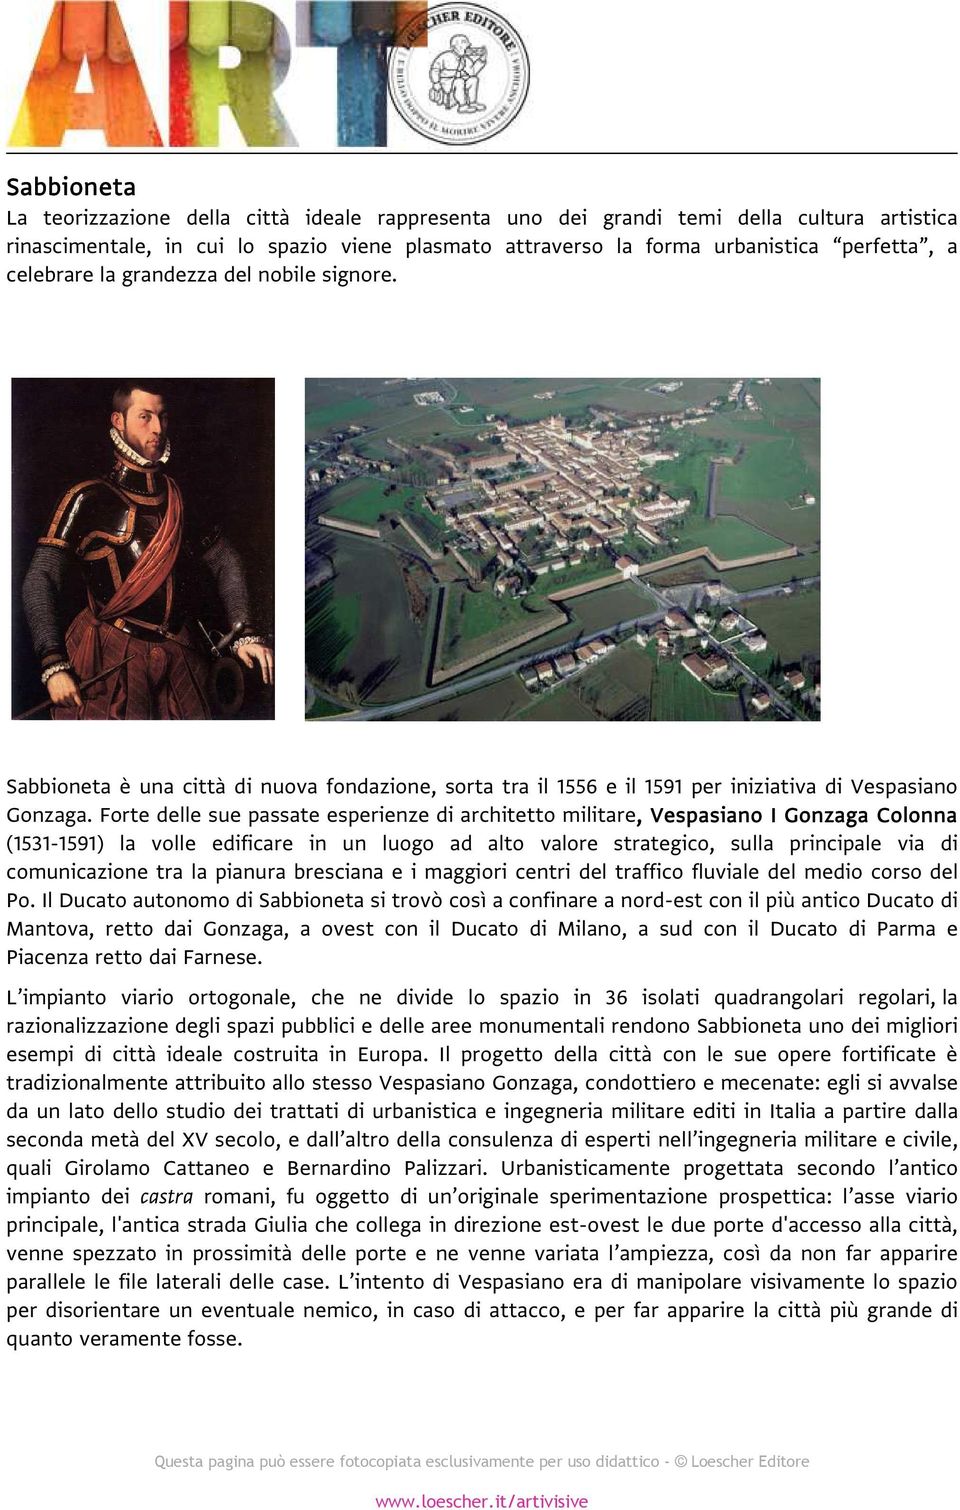 Forte delle sue passate esperienze di architetto militare, Vespasiano I Gonzaga Colonna (1531-1591) la volle edificare in un luogo ad alto valore strategico, sulla principale via di comunicazione tra